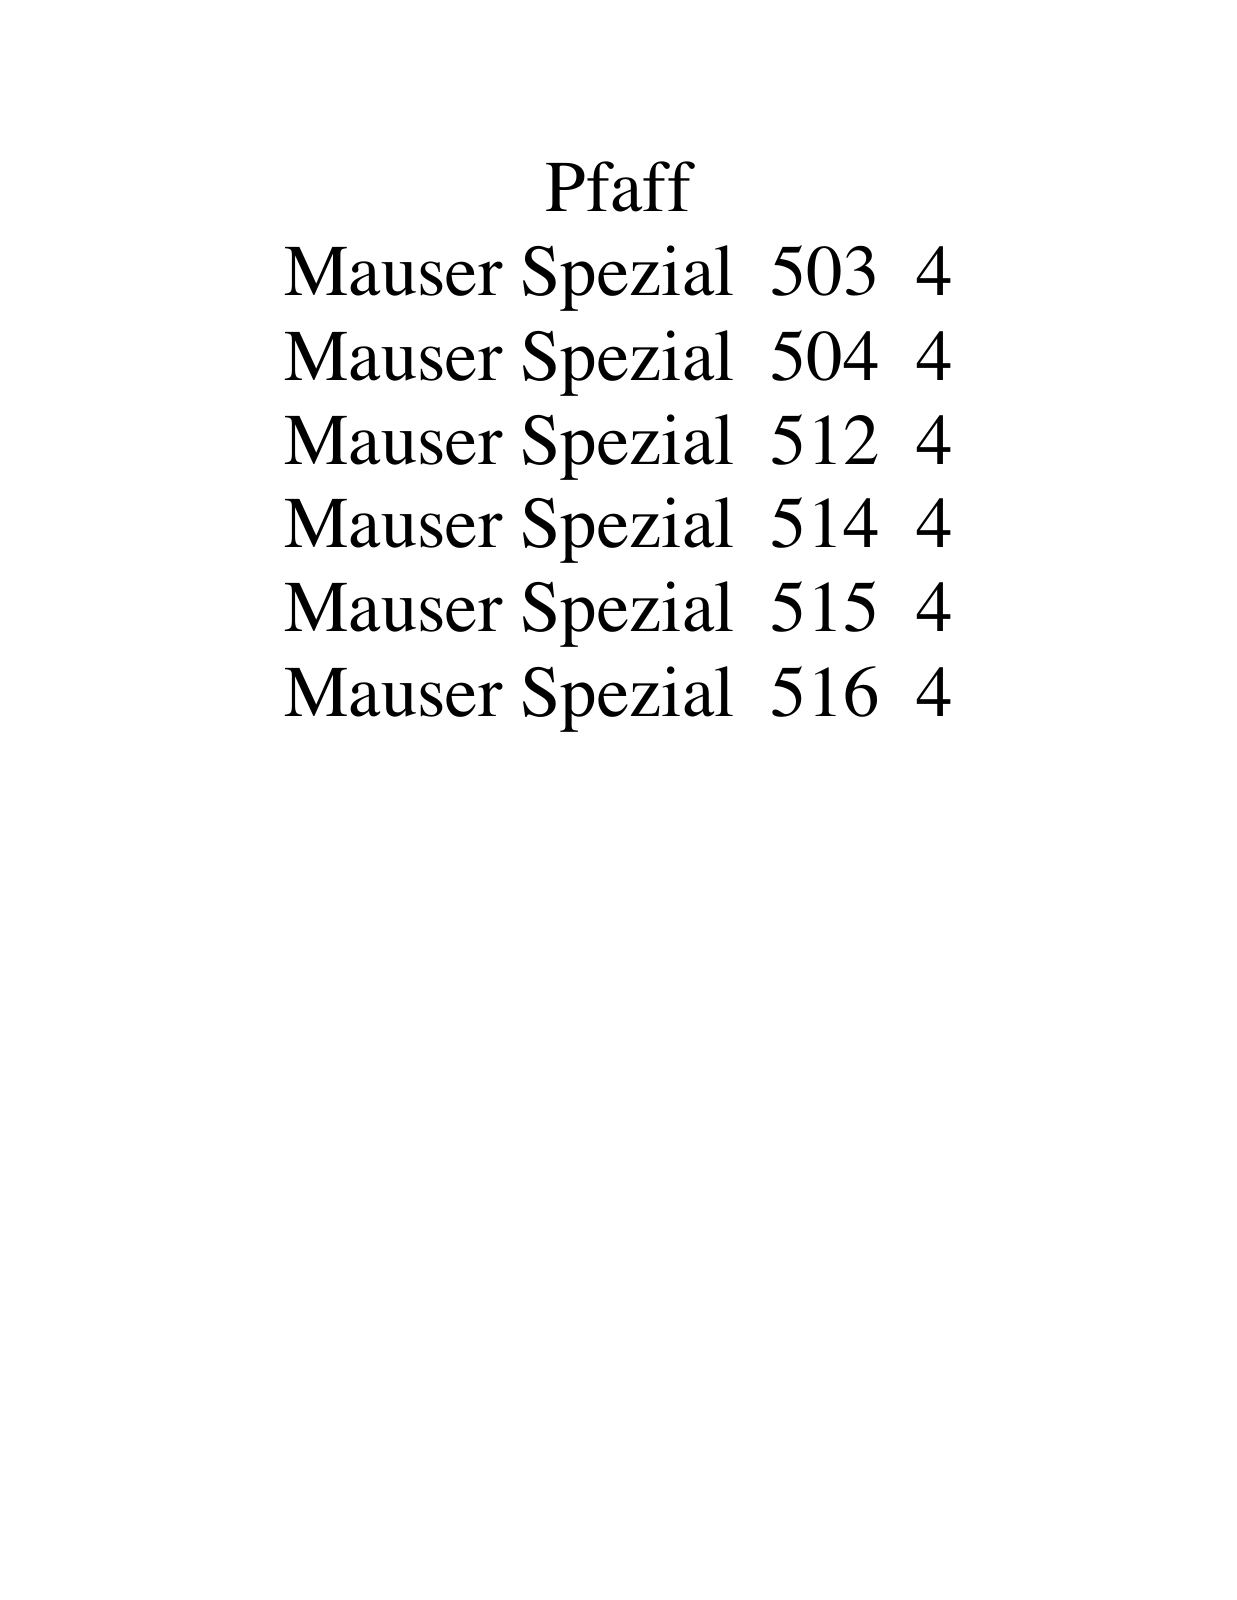 PFAFF Mauser Spezial 503 4, Mauser Spezial 504 4, Mauser Spezial 512 4, Mauser Spezial 514 4, Mauser Spezial 515 4 Parts List